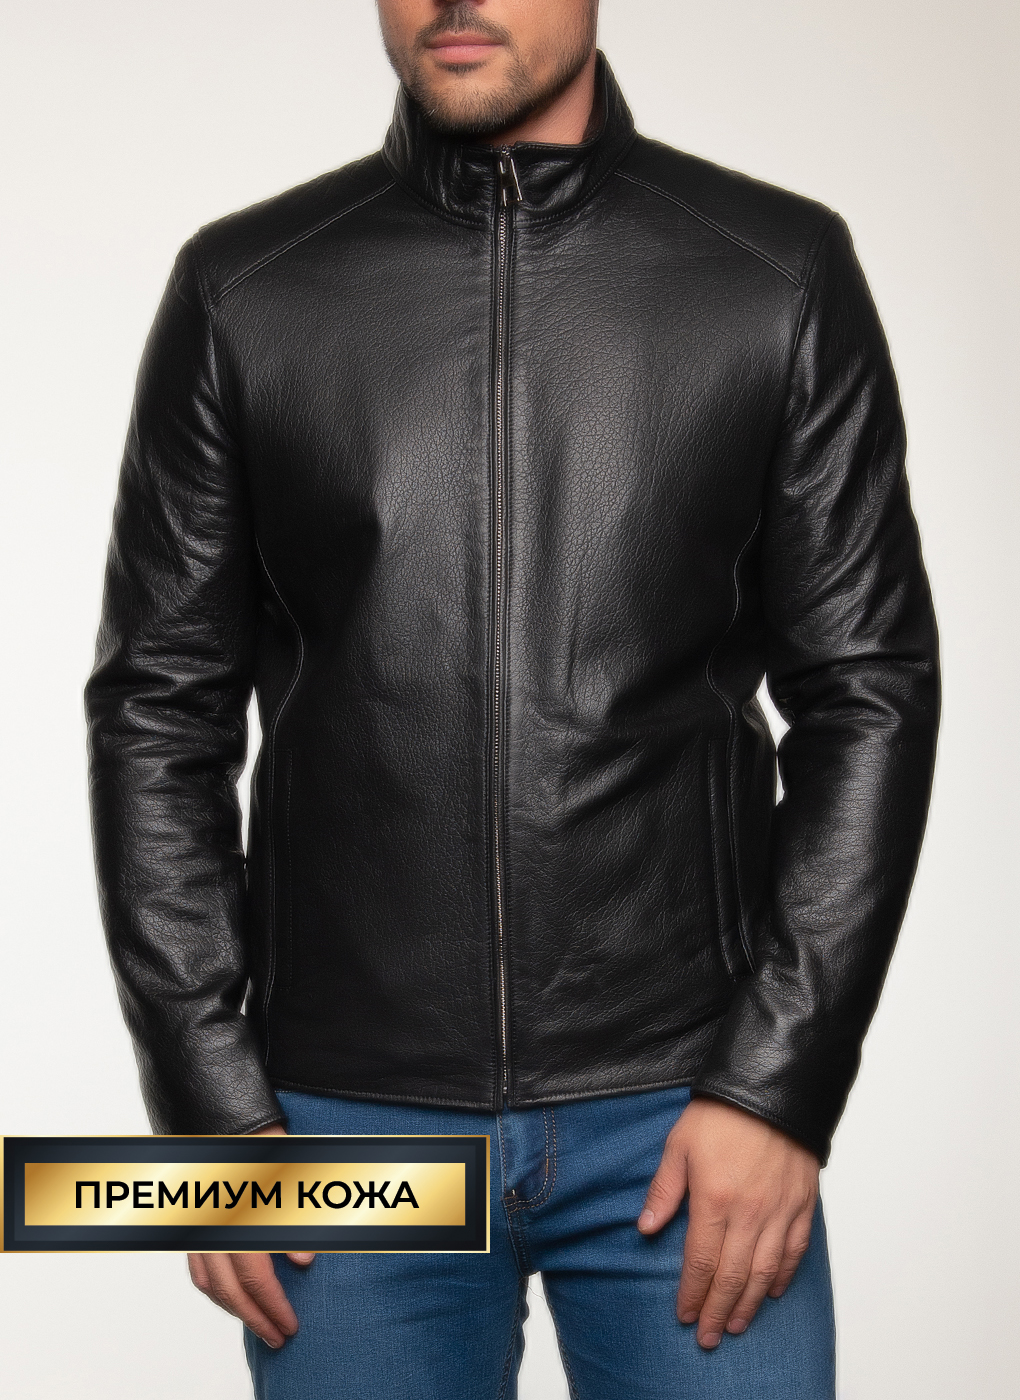 Кожаная куртка мужская Каляев 47478 черная 52 RU